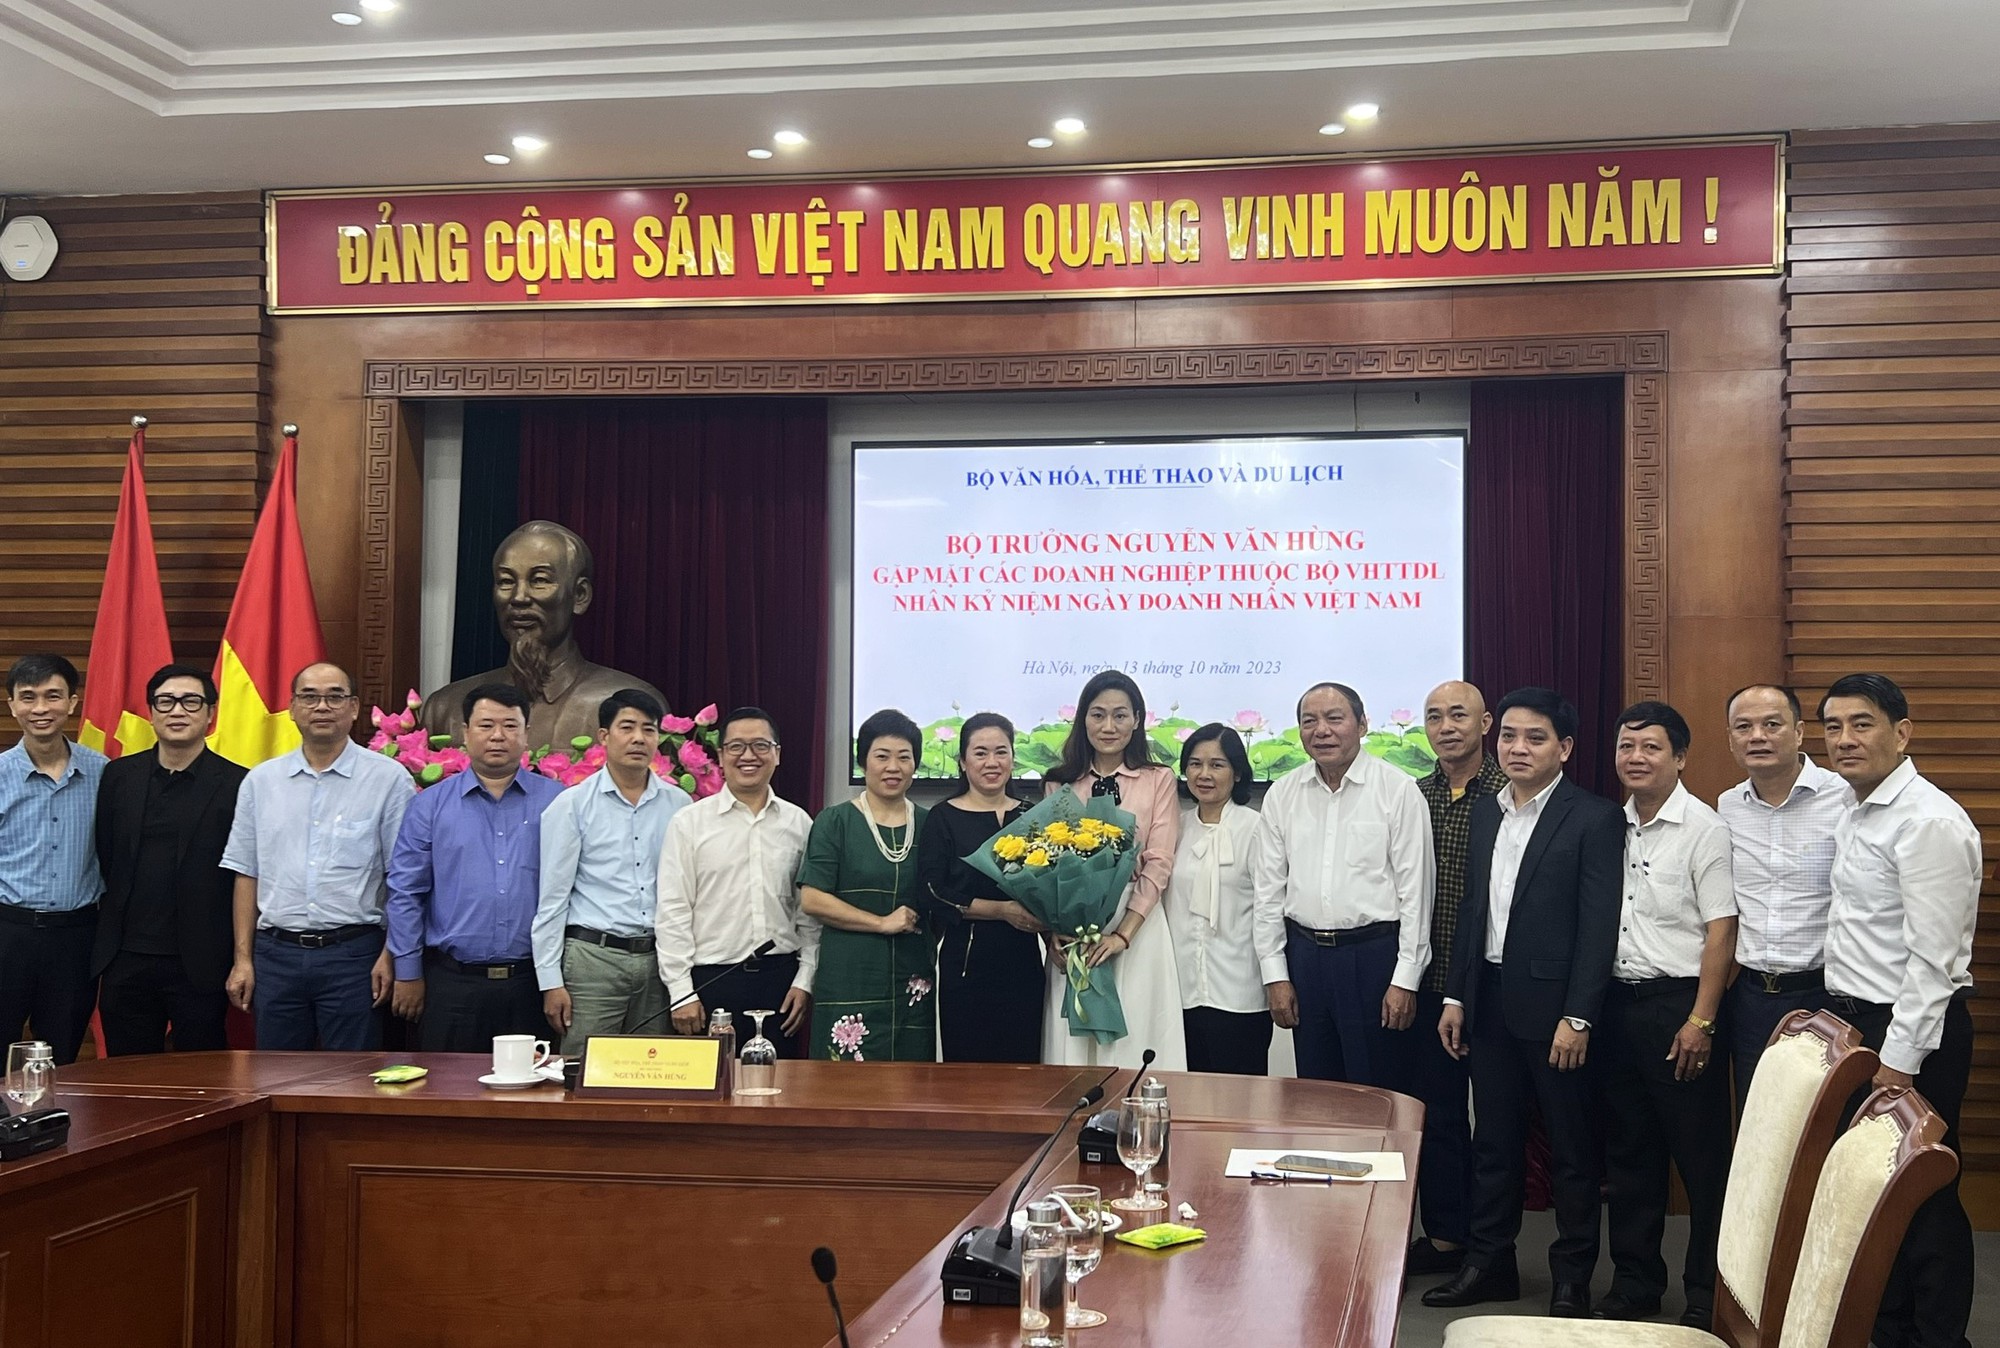 Bộ trưởng Nguyễn Văn Hùng: Doanh nghiệp thuộc Bộ VHTTDL phải có tầm nhìn, tư duy mới để kiến tạo và phát triển - Ảnh 6.